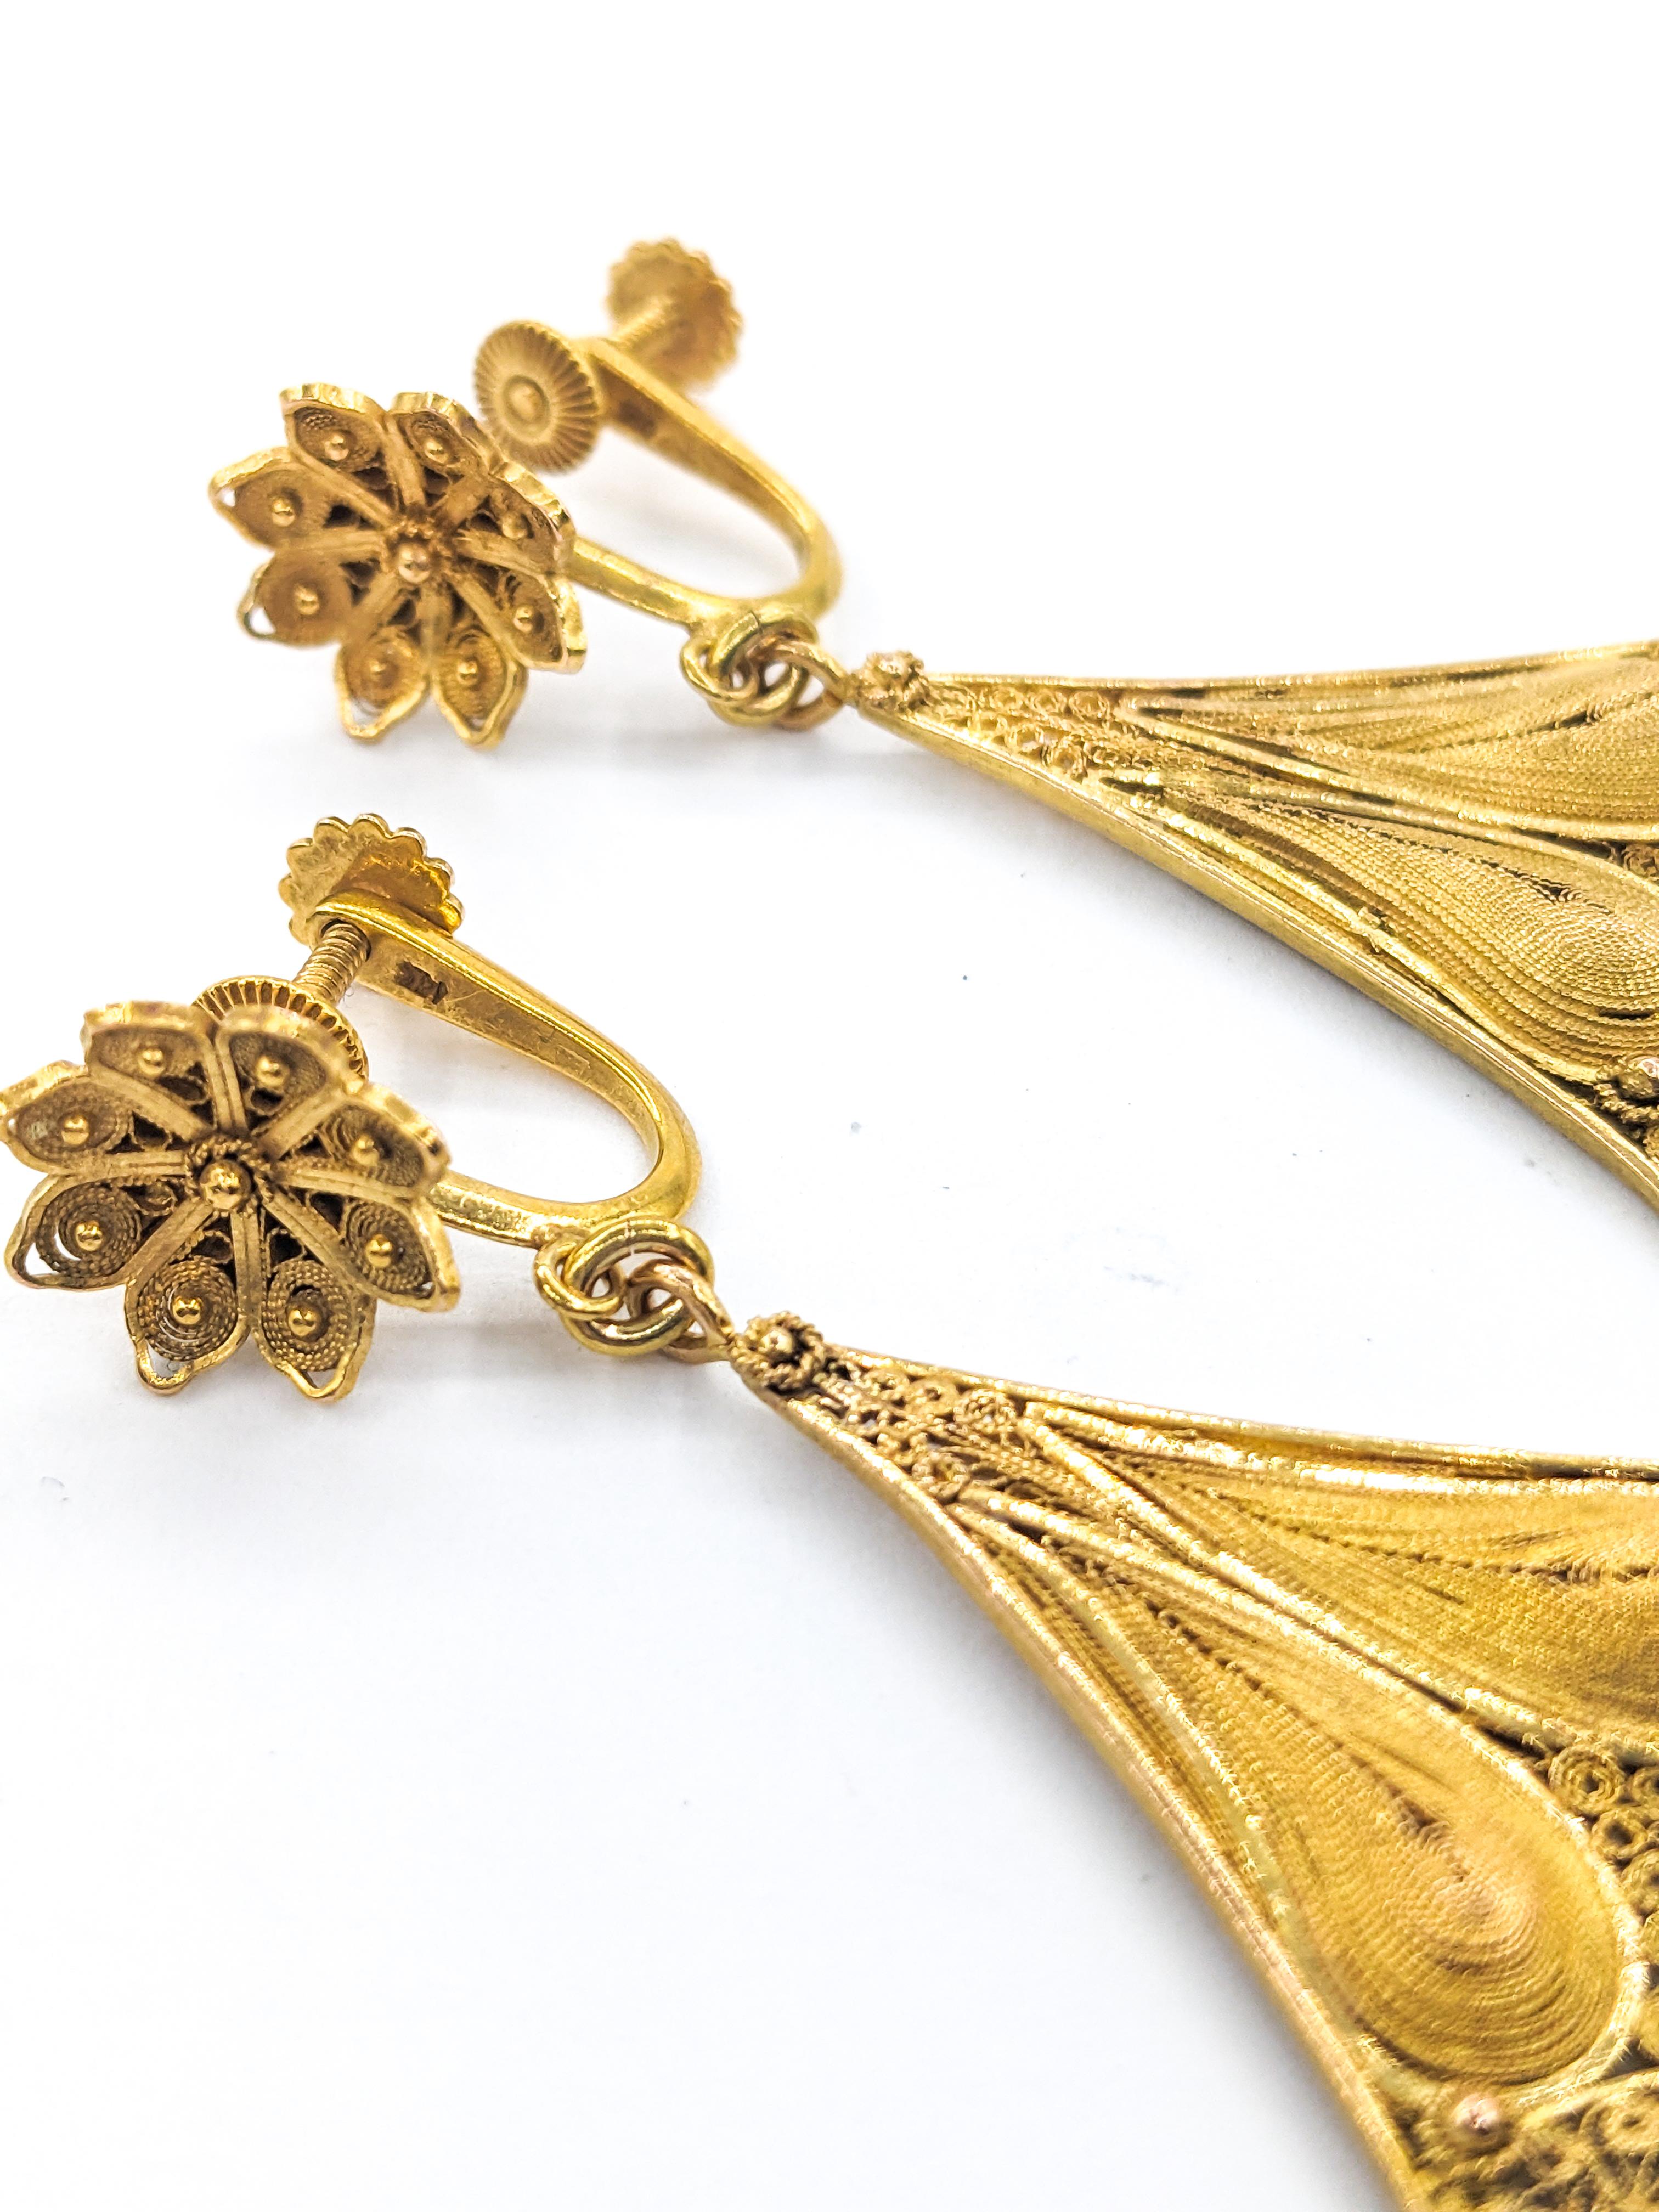 Art Nouveau filigran &Milgrain Tropfen Ohrringe In Gelbgold

Diese exquisiten filigranen Jugendstil-Ohrringe aus der Zeit zwischen 1890 und 1910 sind meisterhaft aus 18-karätigem Gelbgold gefertigt und mit Rillen versehen. Sie zeichnen sich durch